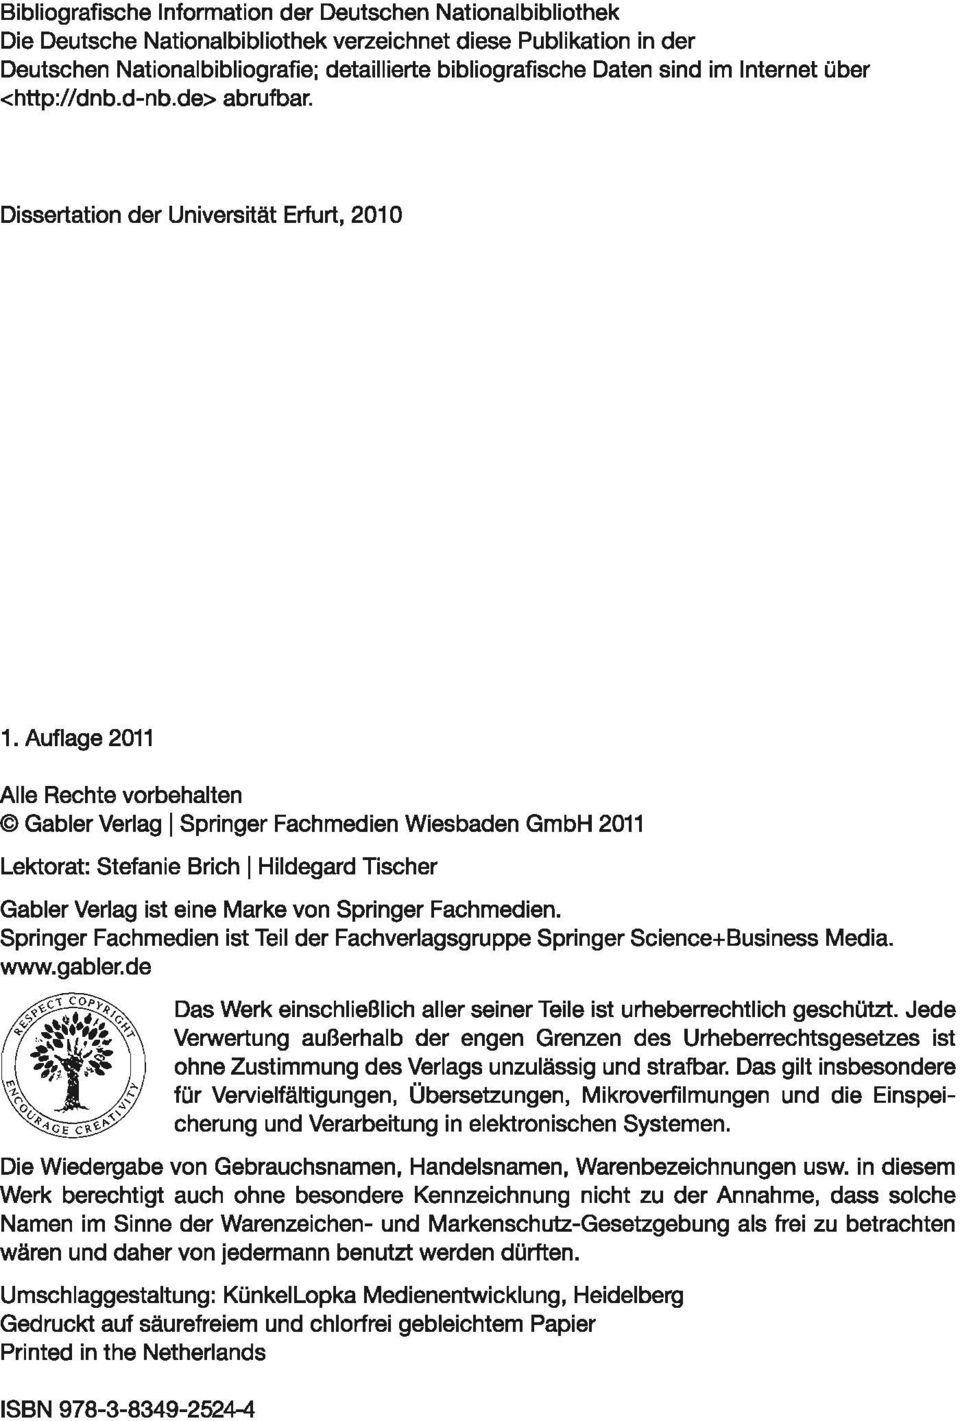 Auflage 2011 Alle Rechte vorbehalten Gabler Verlag ISpringer Fachmedien Wiesbaden GmbH 2011 Lektorat: Stefanie Brich IHildegard Tischer Gabler Verlag ist eine Marke von Springer Fachmedien.